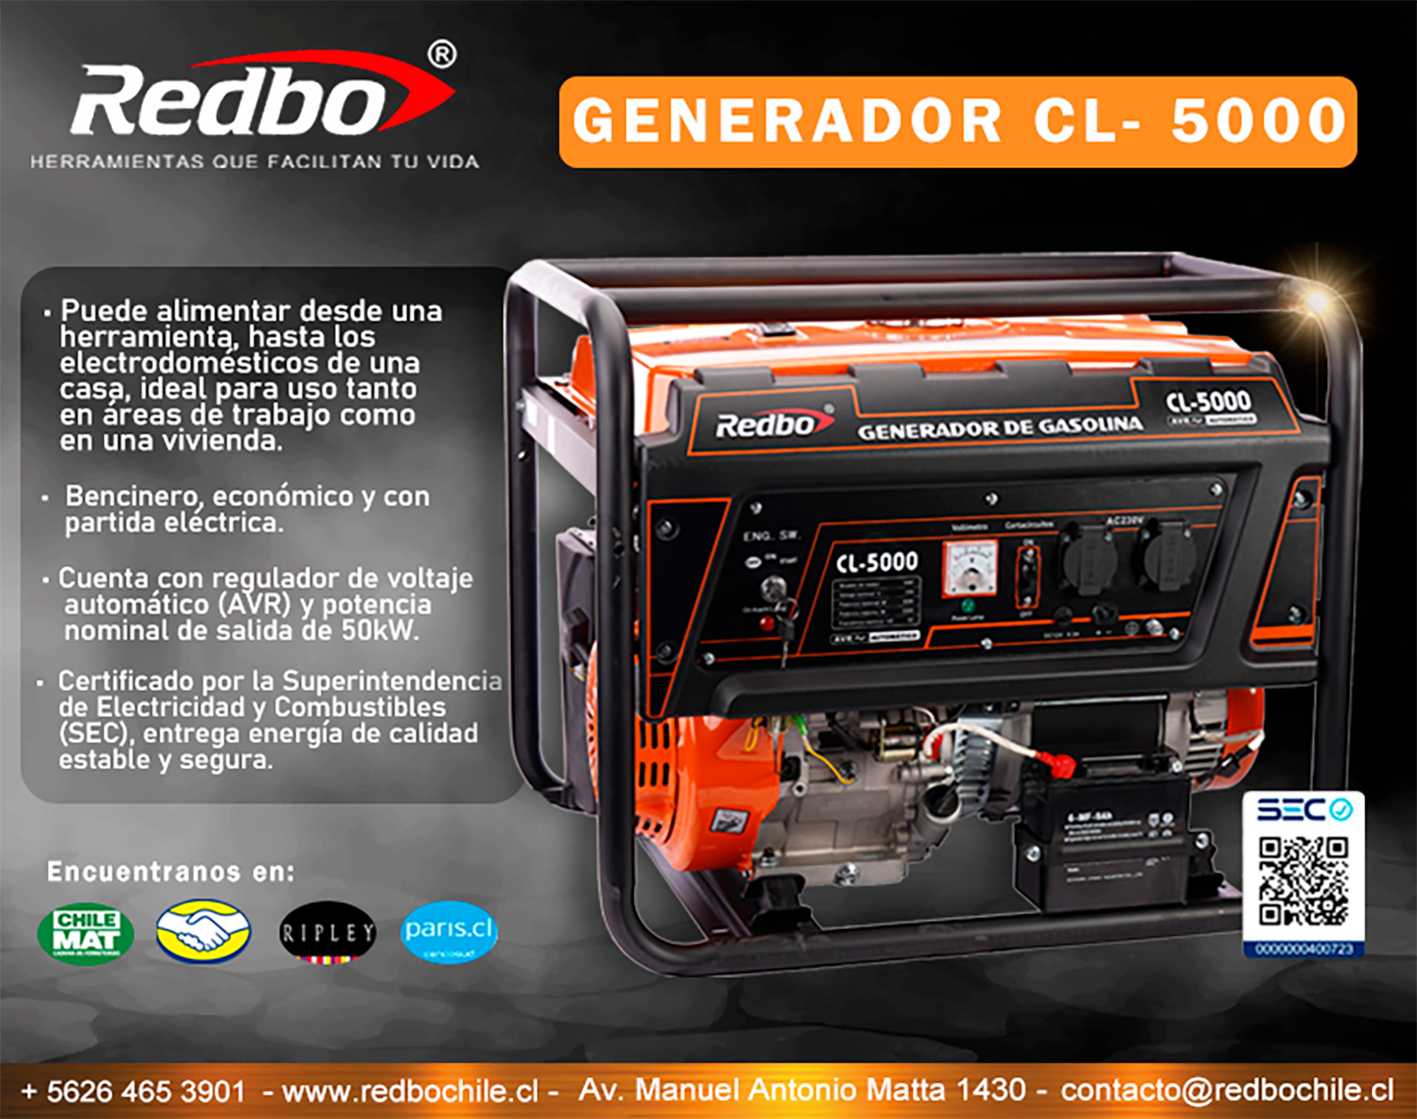 REDBO presenta su Generador CL-5000